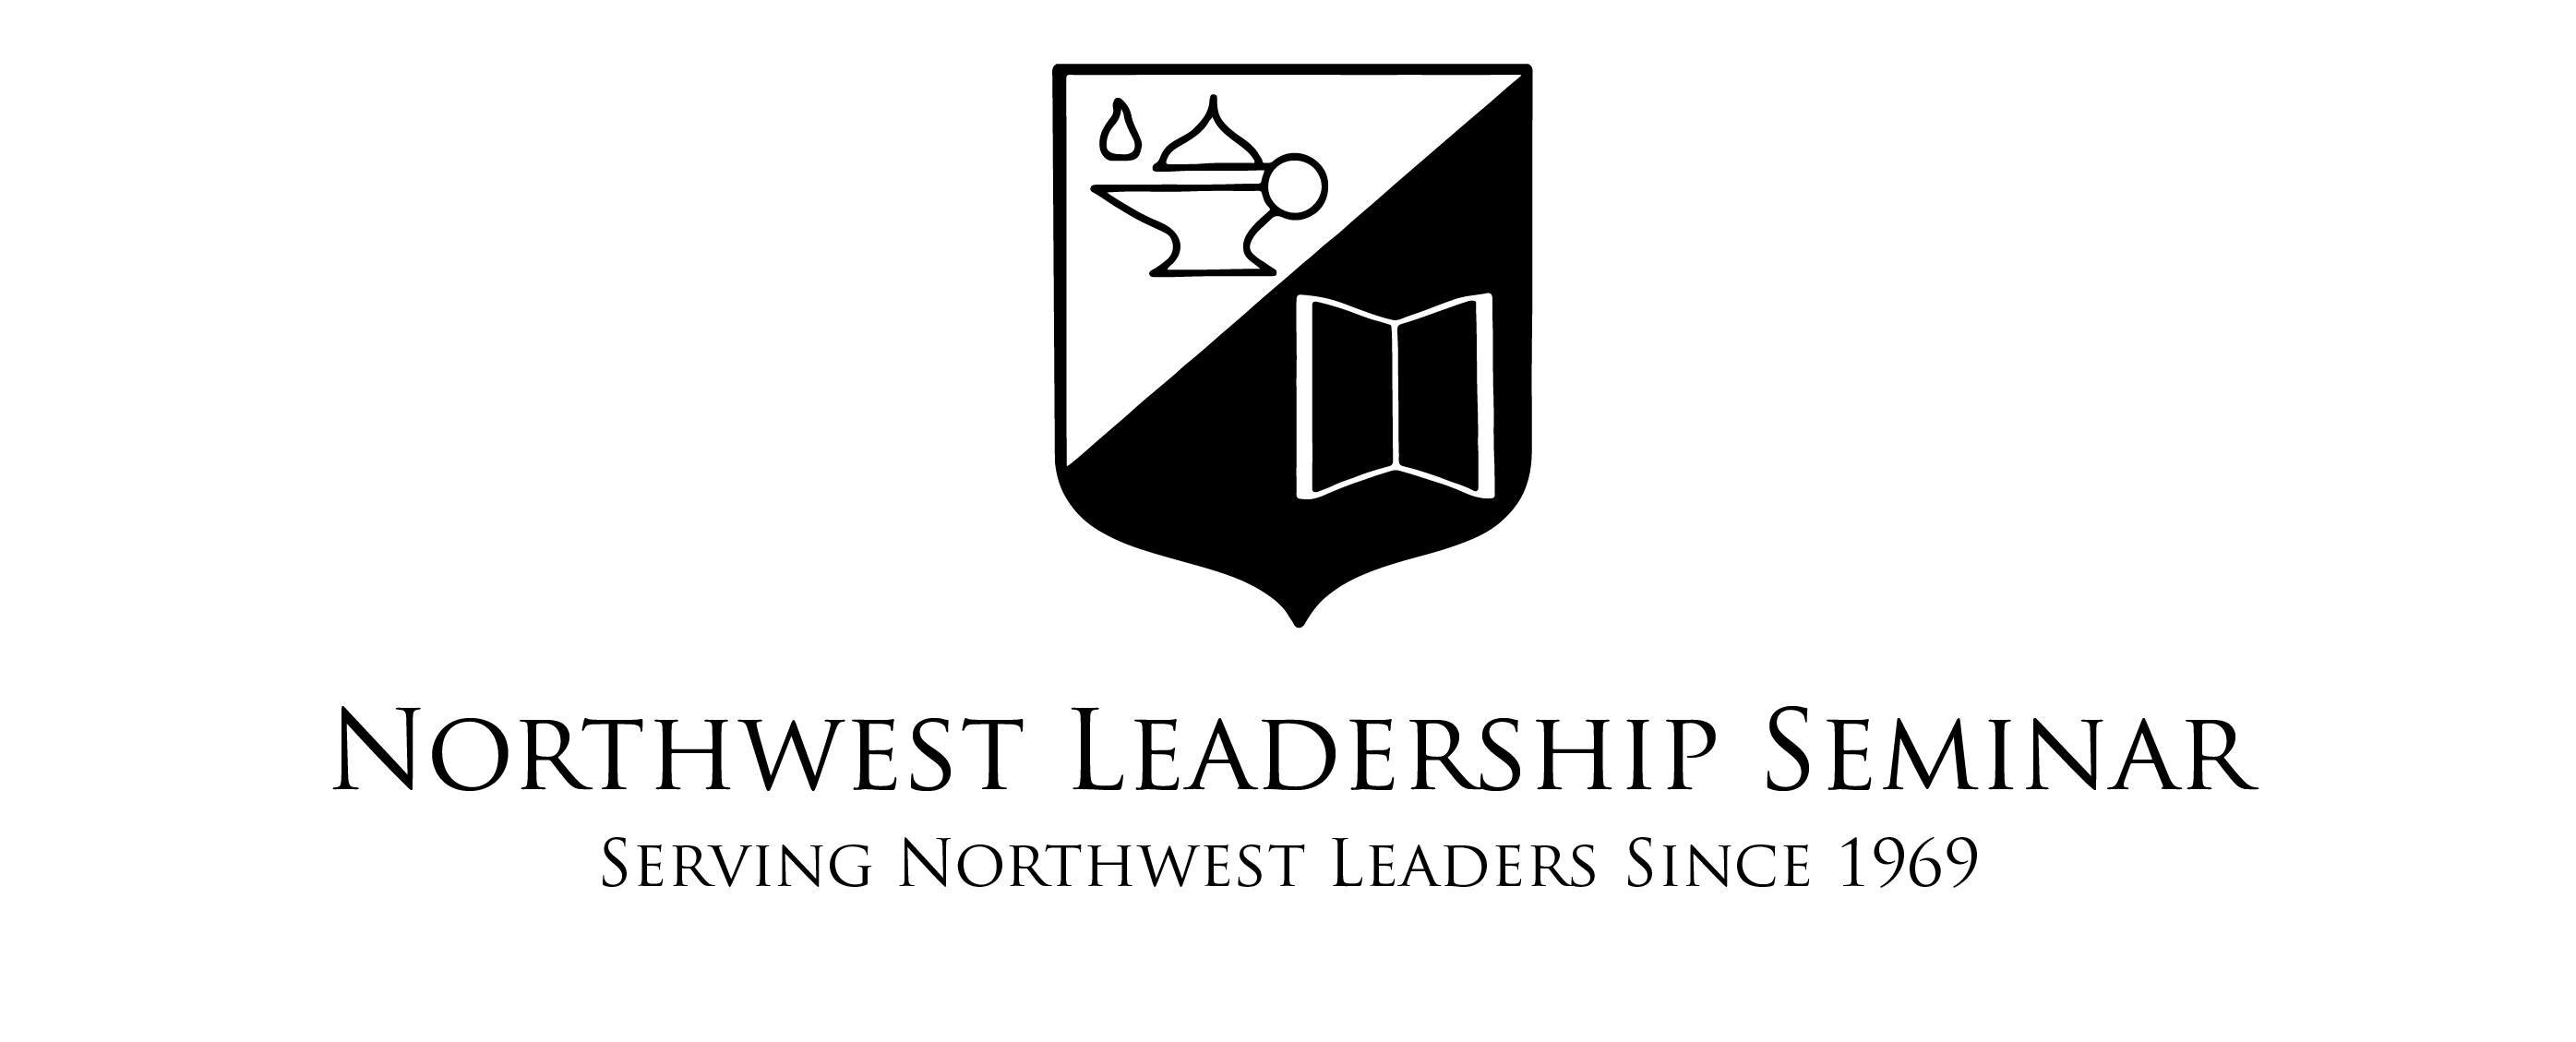 အနောက်မြောက် - ခေါင်းဆောင်မှု - နှီးနှောဖလှယ်ပွဲ - နဖူးစည်းစာတန်း